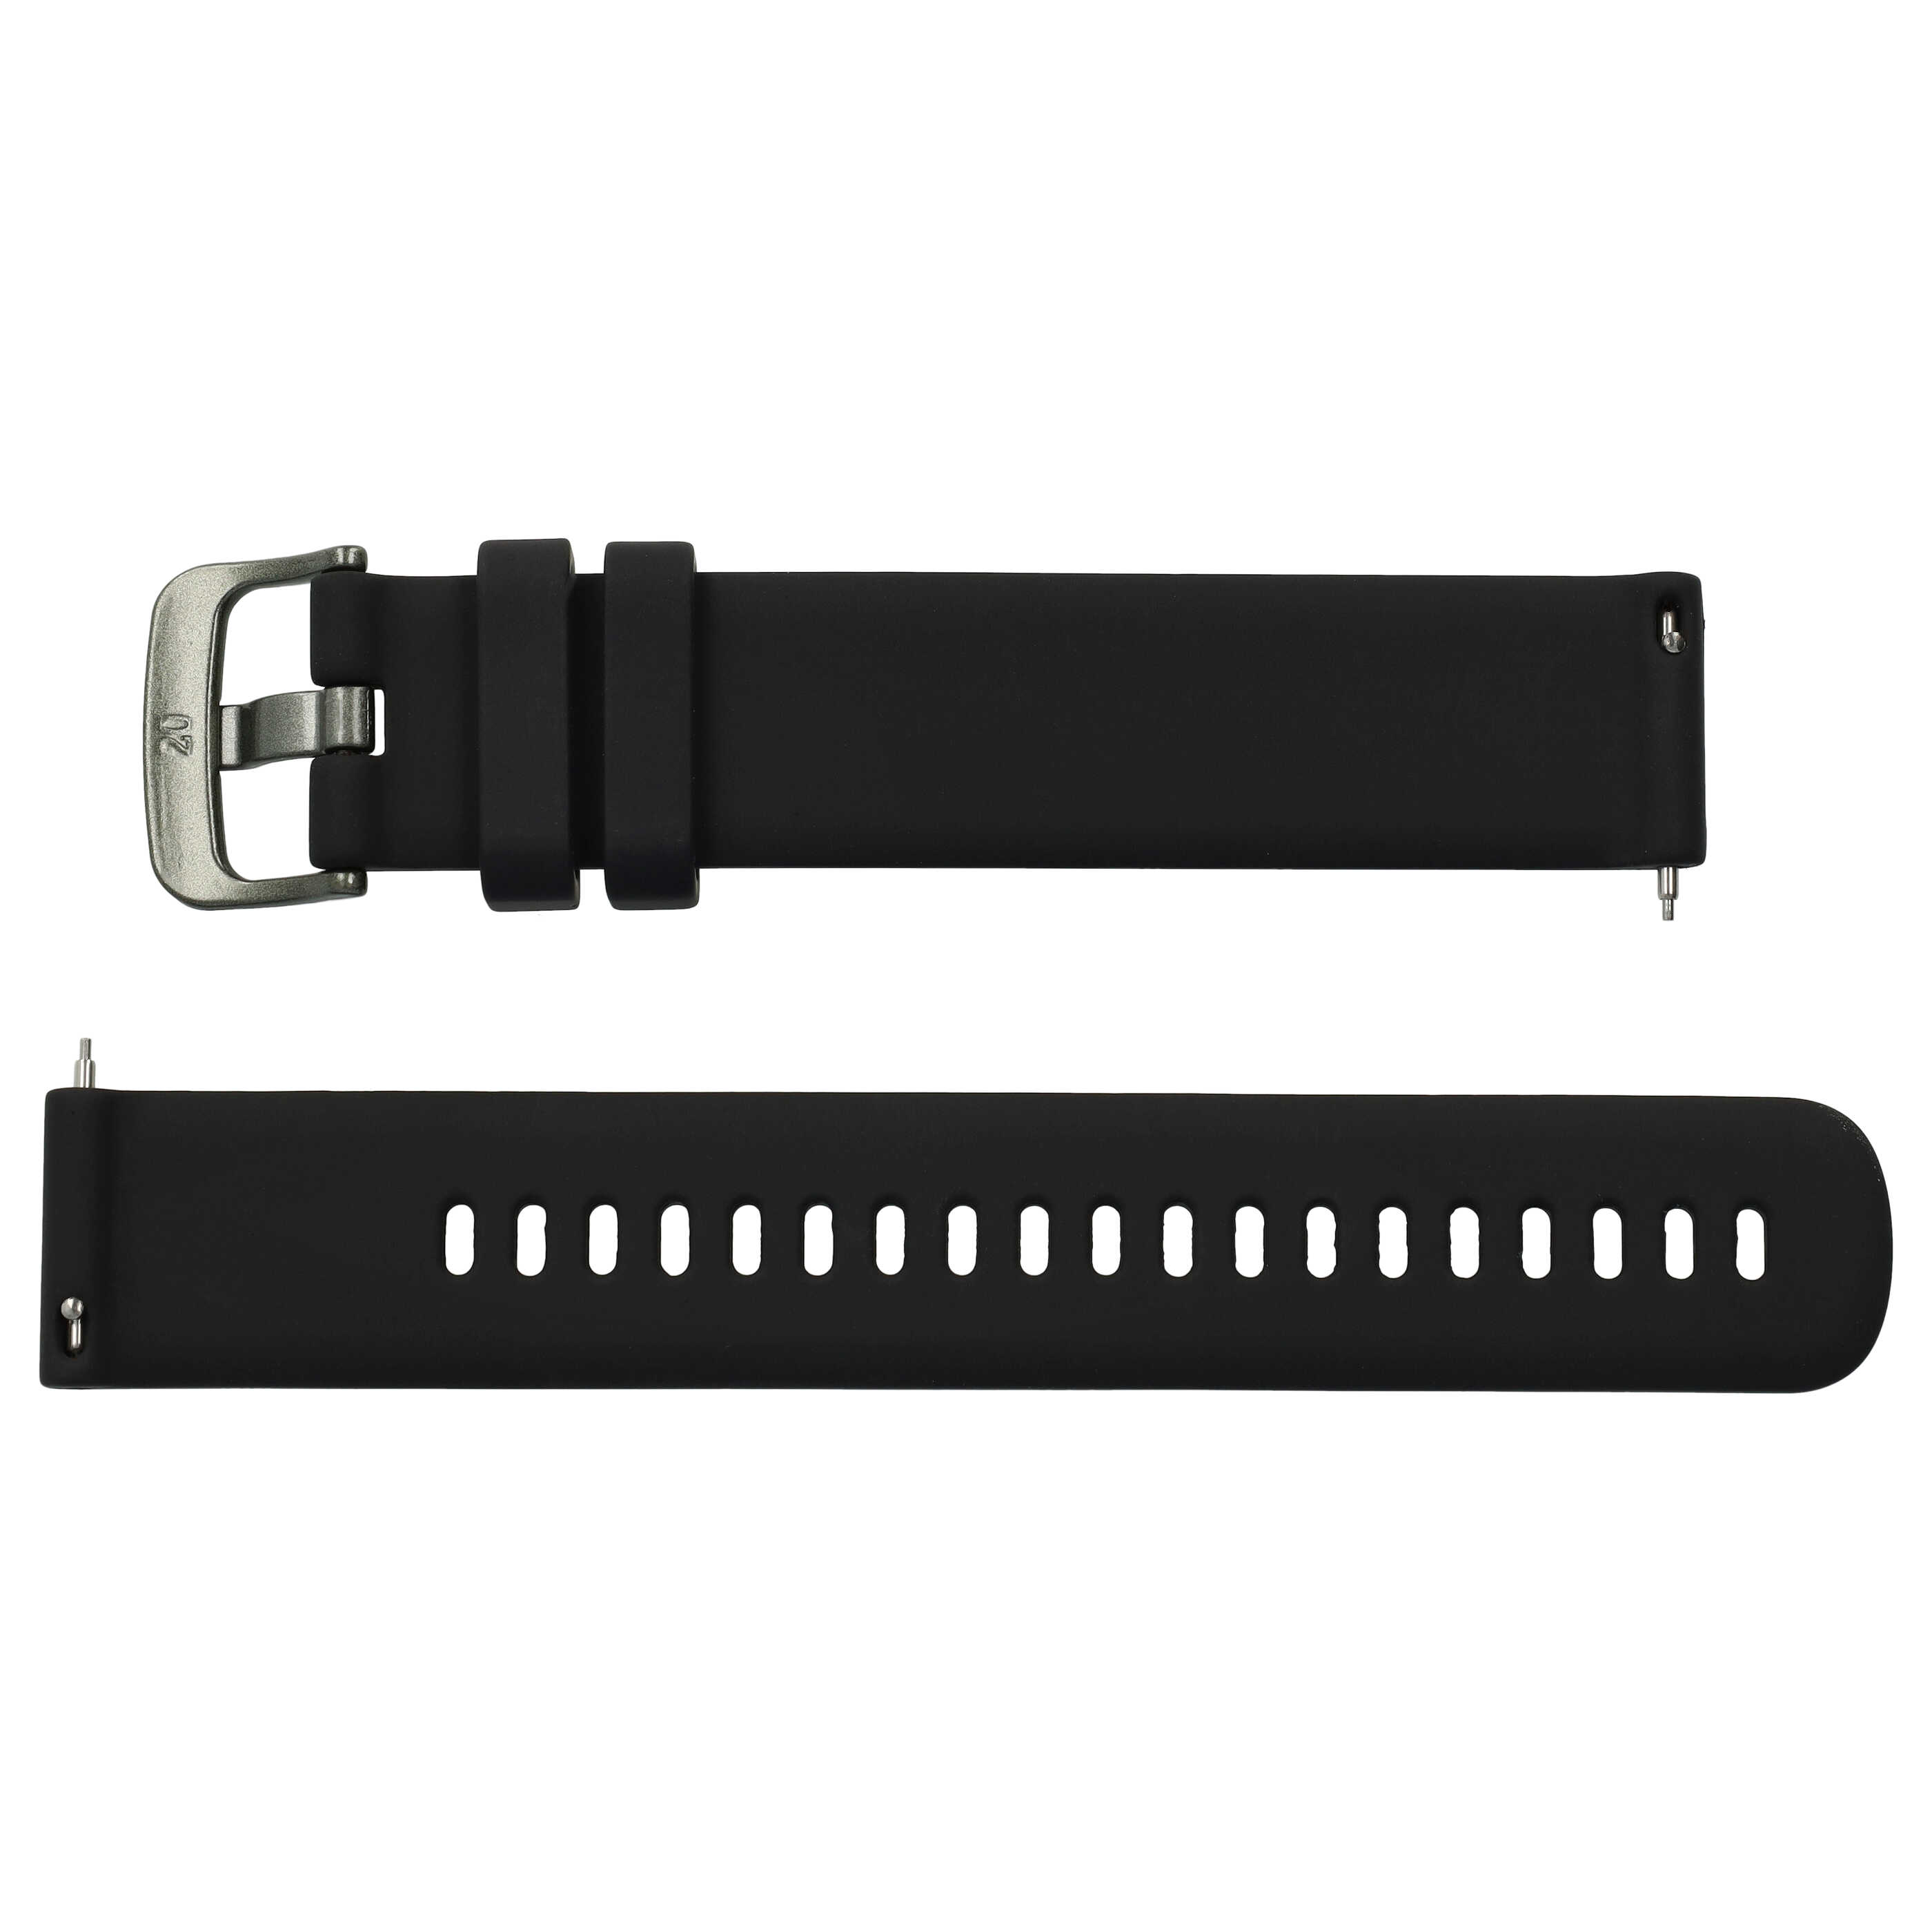 cinturino L per Samsung Galaxy Watch Smartwatch - fino a 260 mm circonferenza del polso, silicone, nero